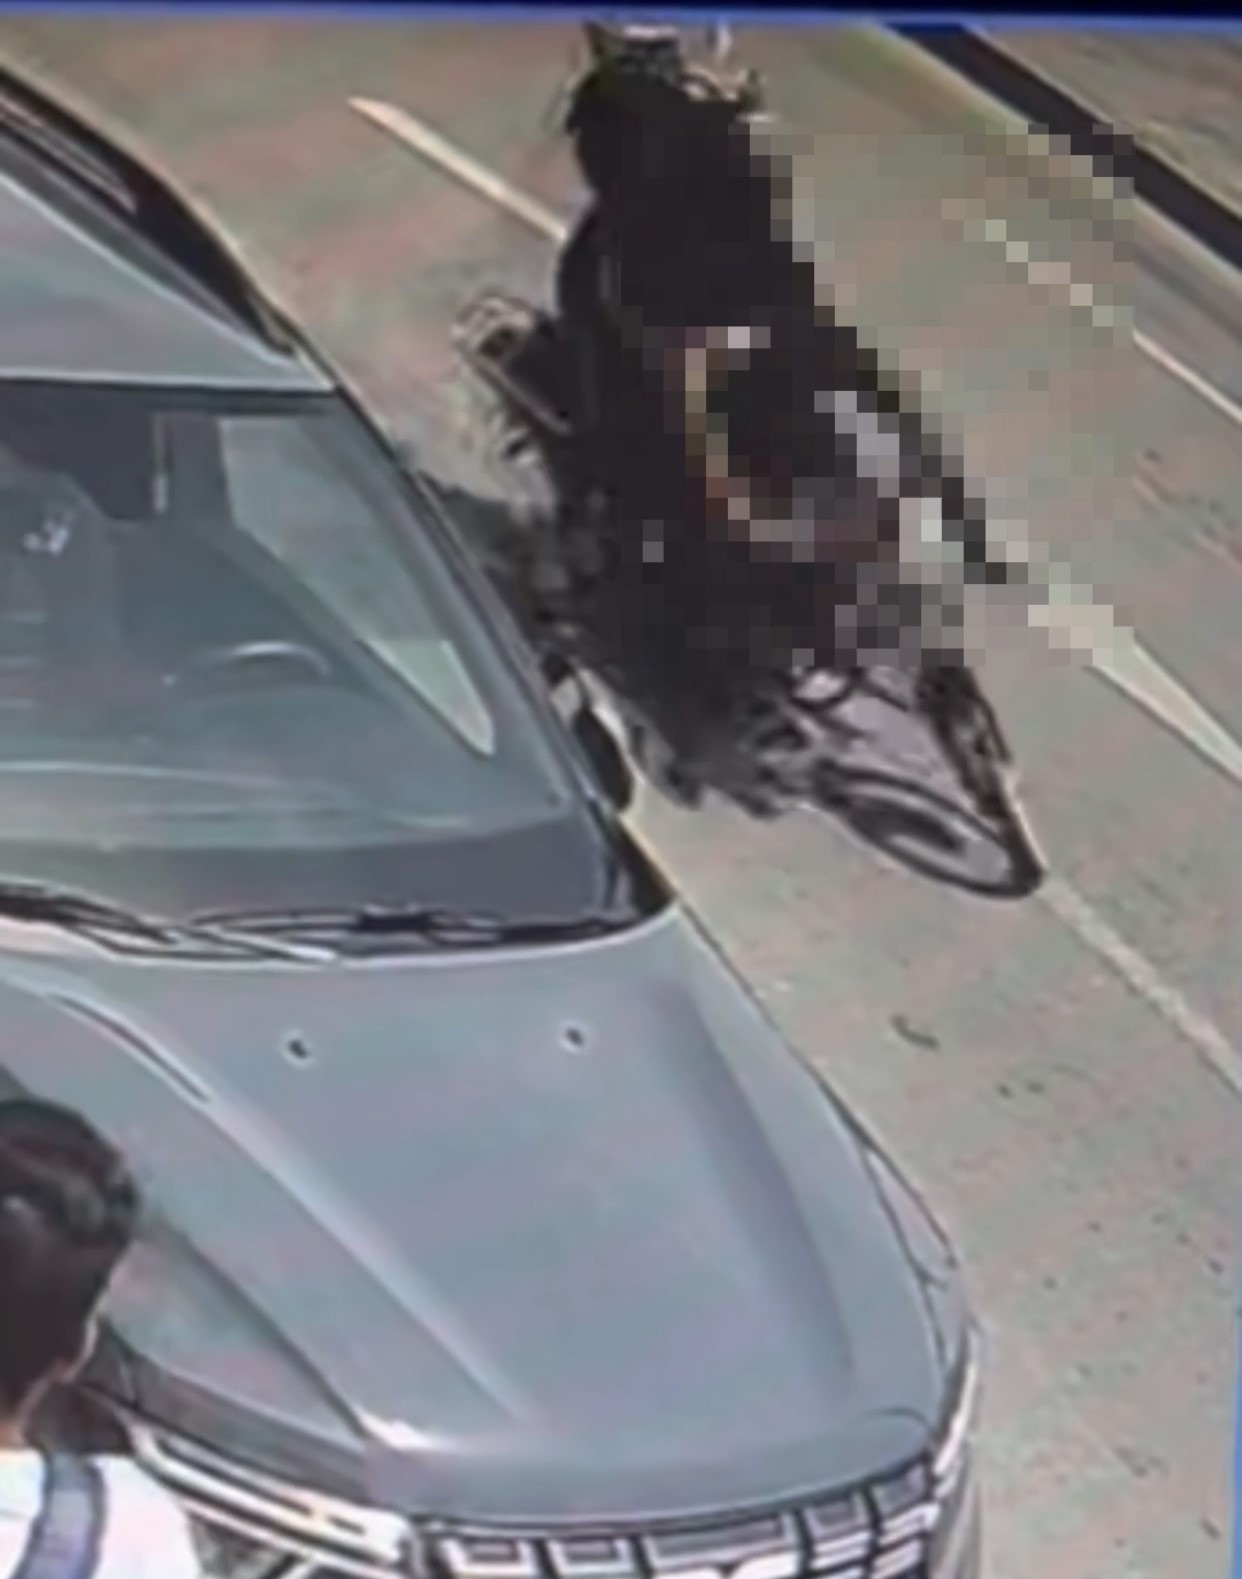 Elazığ’da motosikletin kadına çarpması güvenlik kameralarına yansıdı
